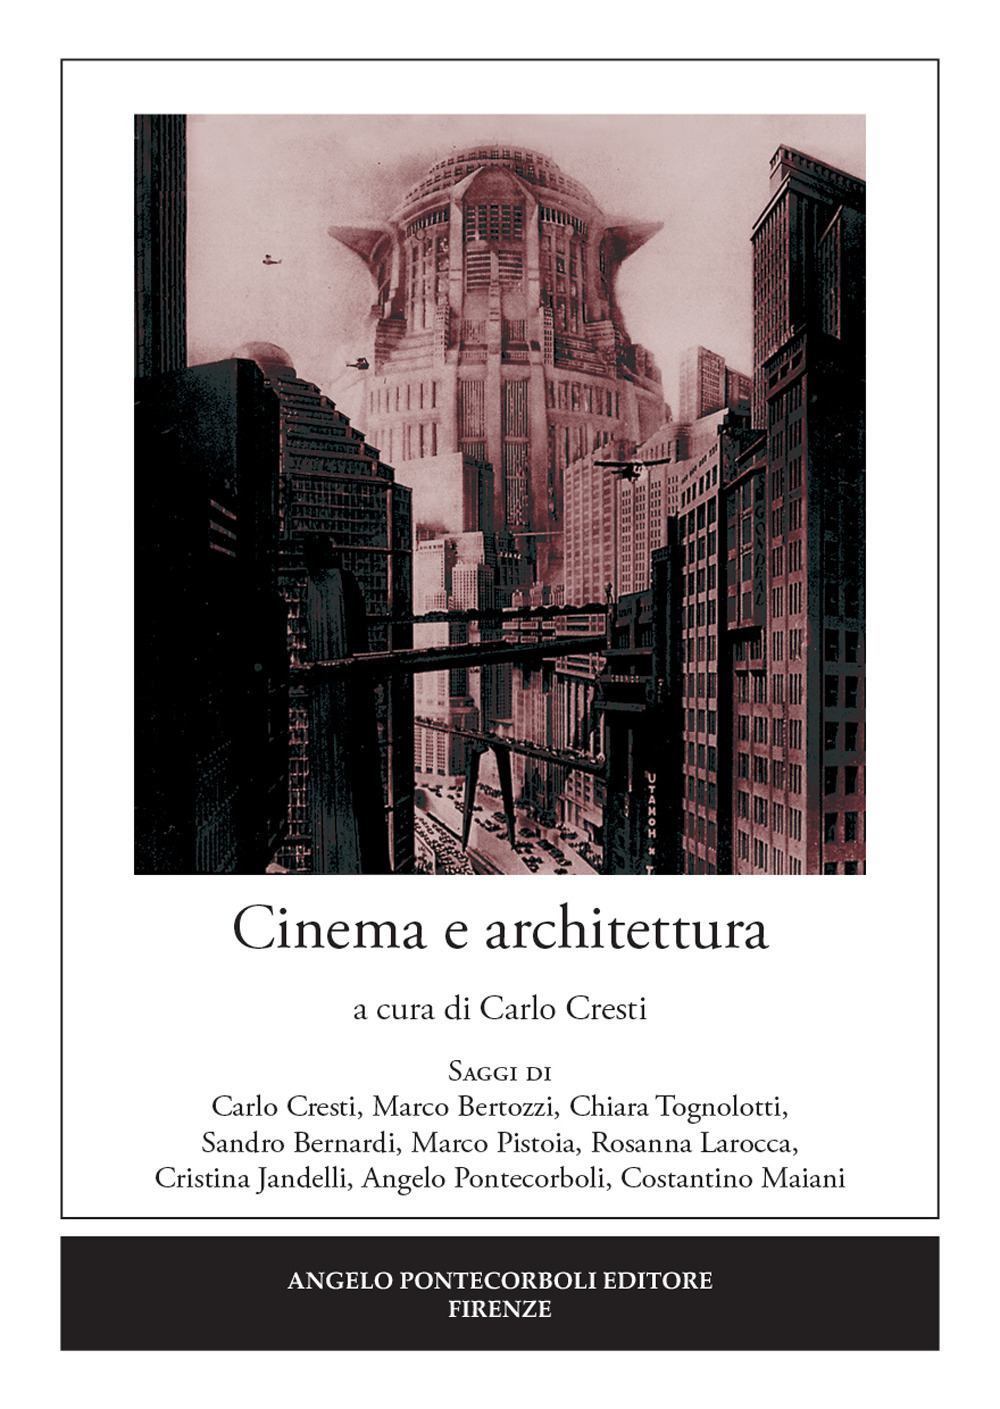 Image of Cinema e architettura